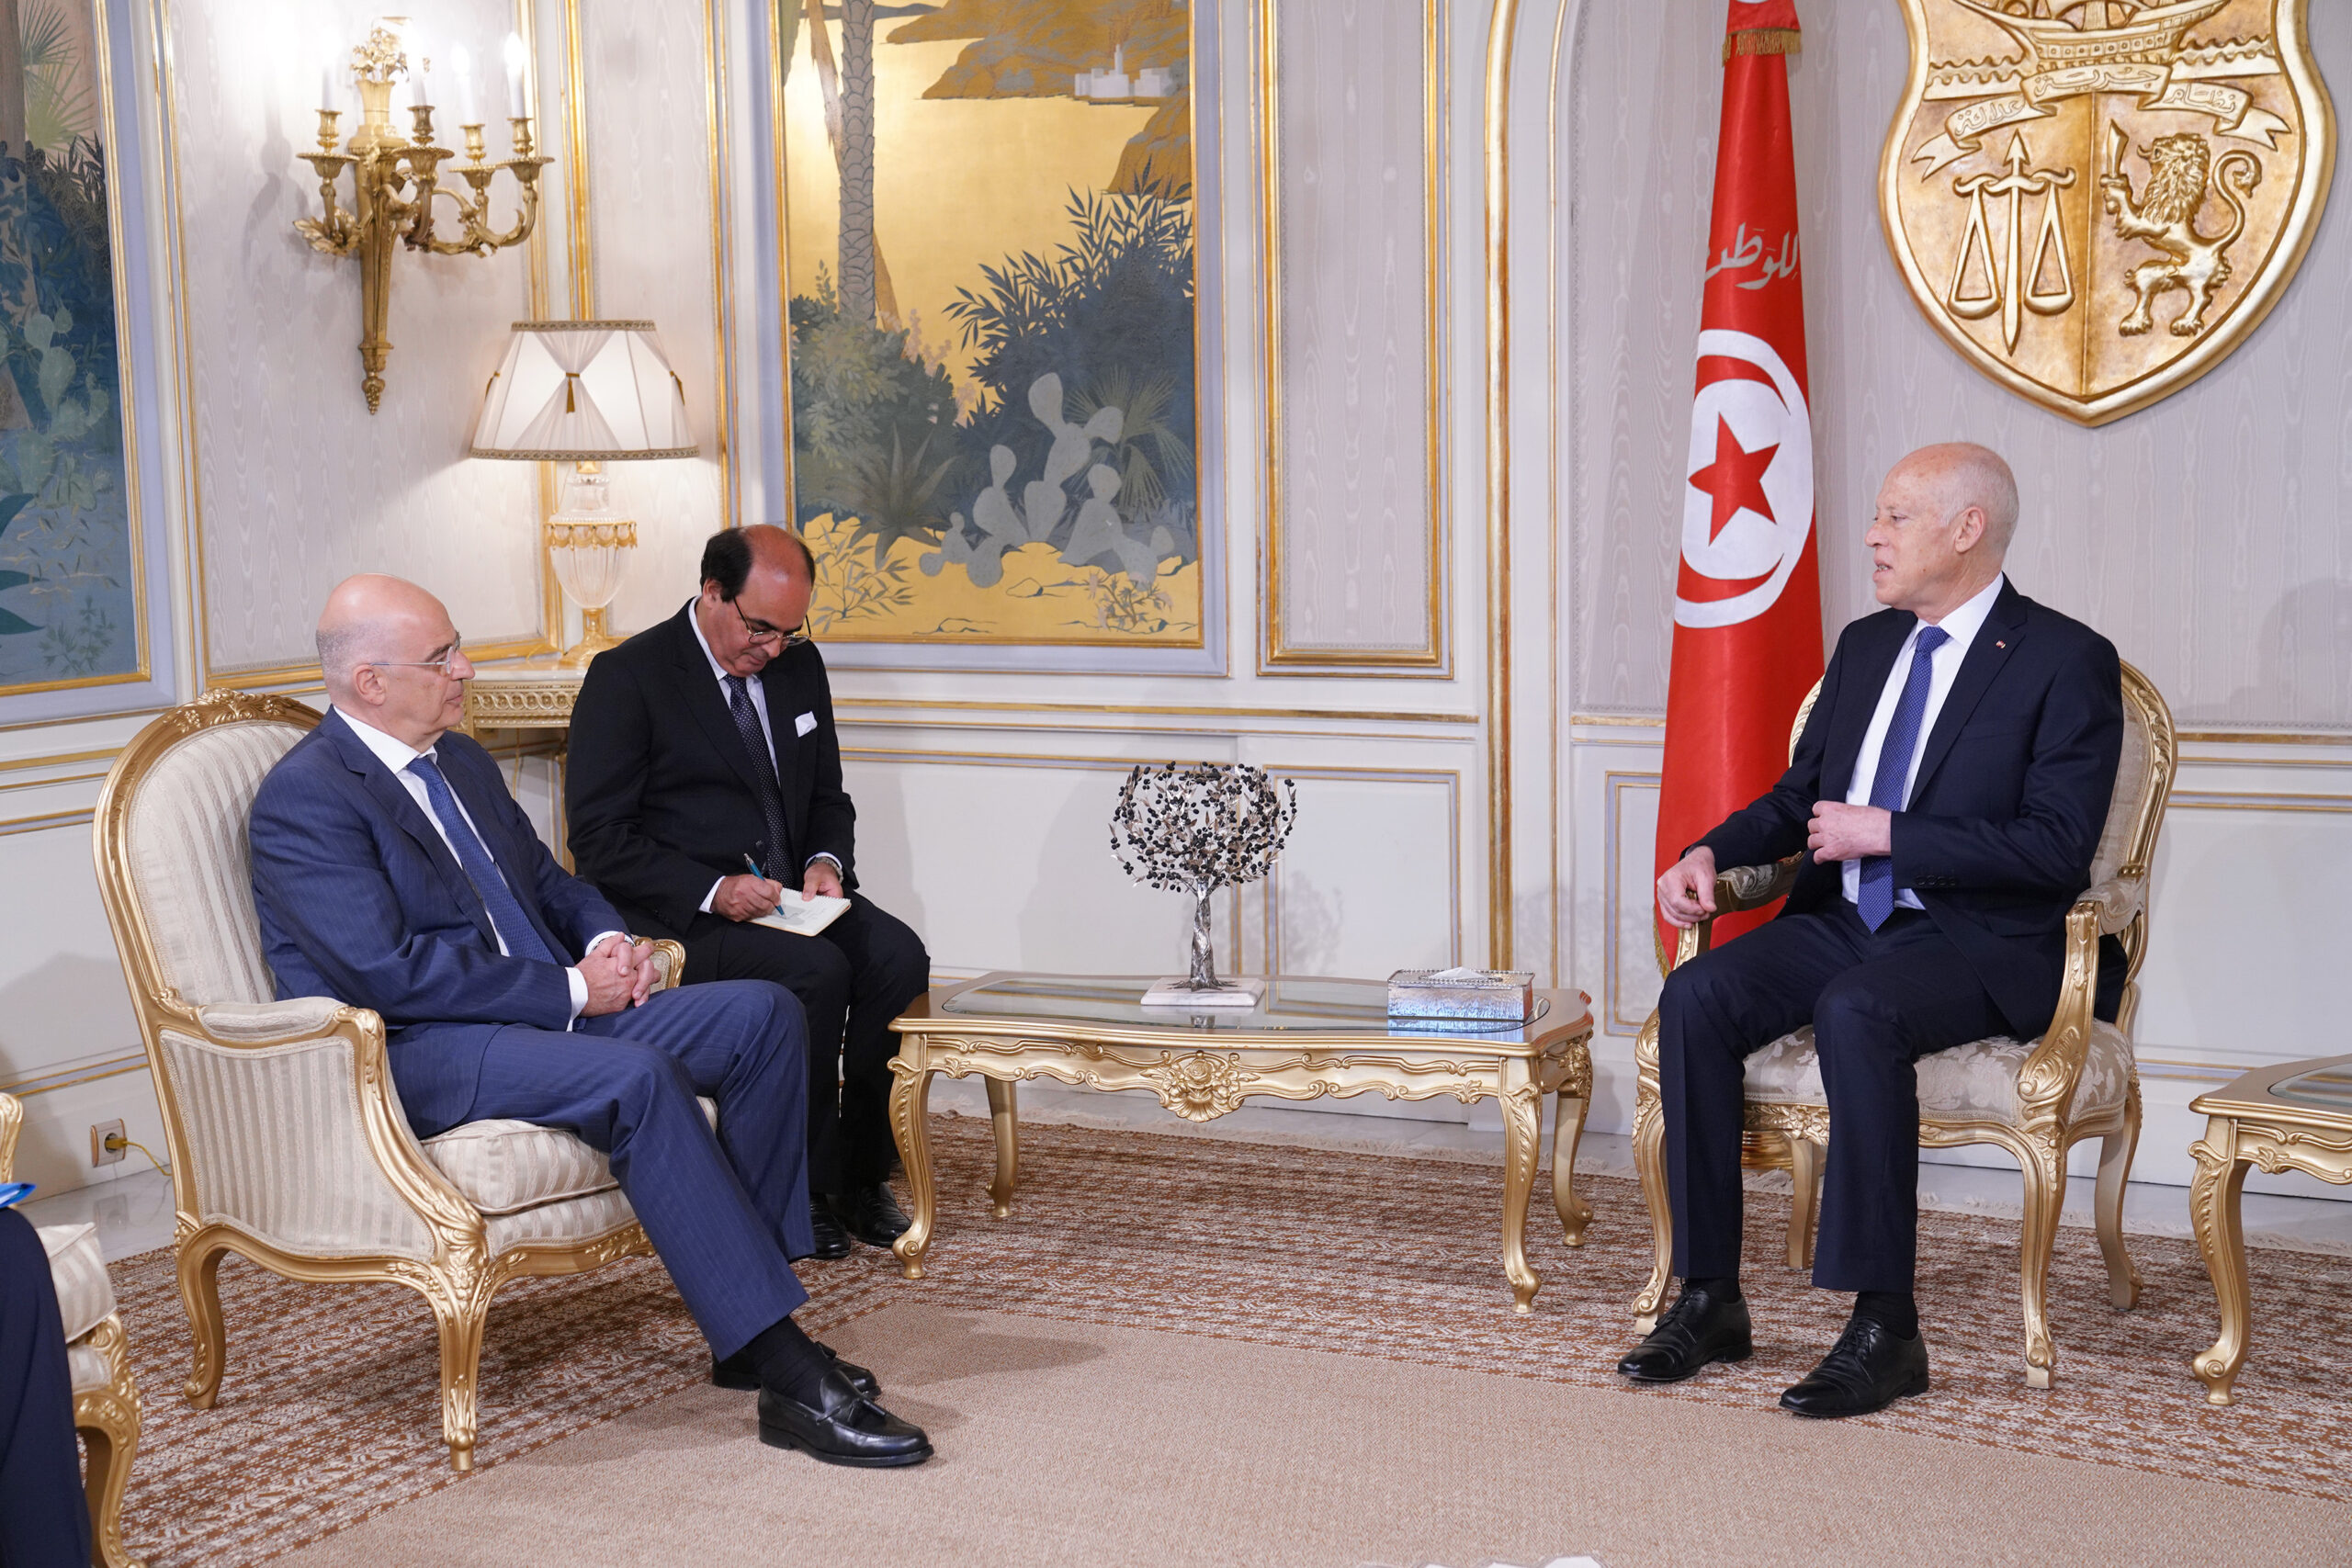 Επίσκεψη Υπουργού Εξωτερικών, Νίκου Δένδια, στην Τυνησία. Συνάντηση με τον Πρόεδρο της χώρας, Kais Saied  (Τύνιδα, 29.06.2020)